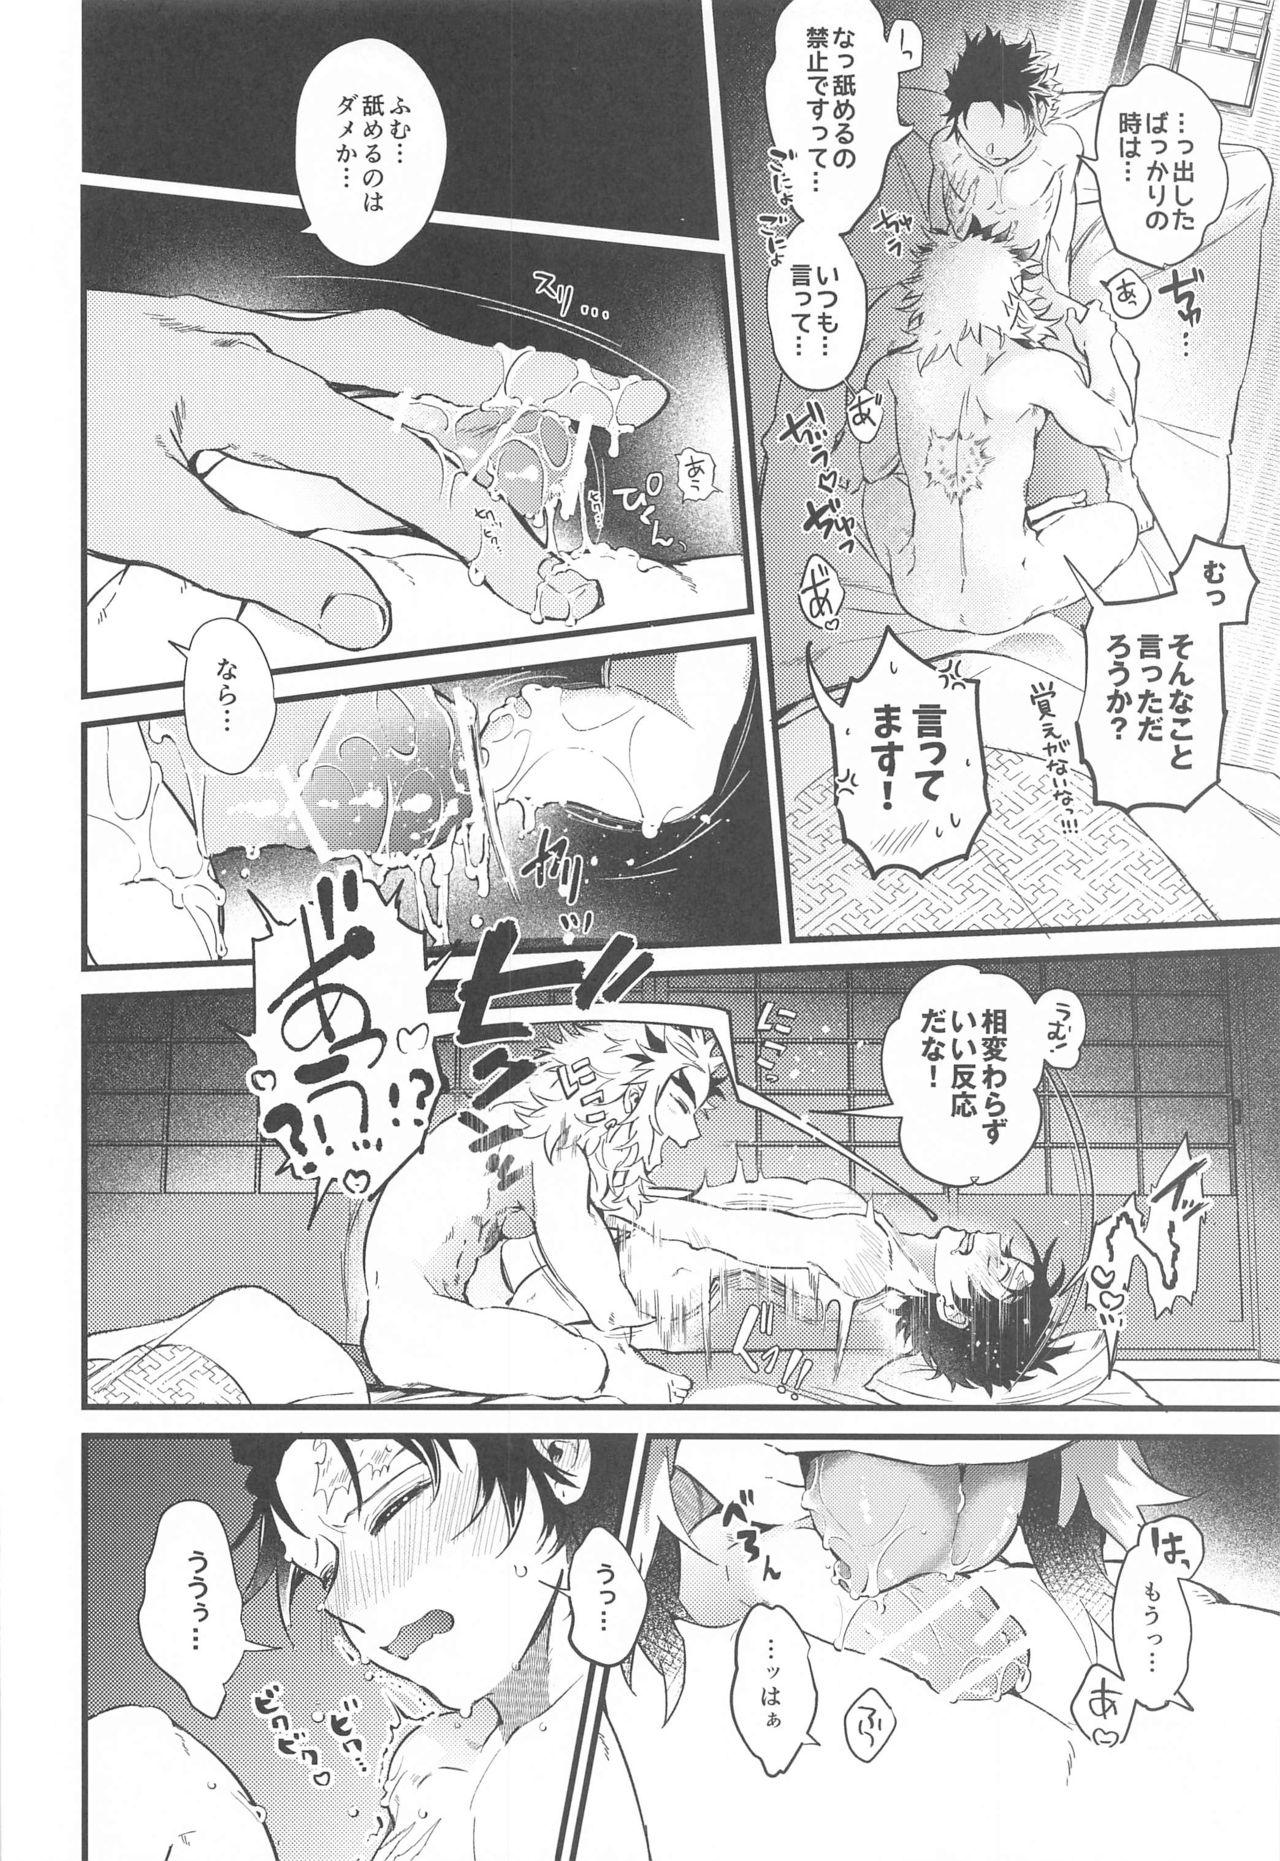 Spanking sonokakushakunitokeru - Kimetsu no yaiba | demon slayer Freak - Page 7